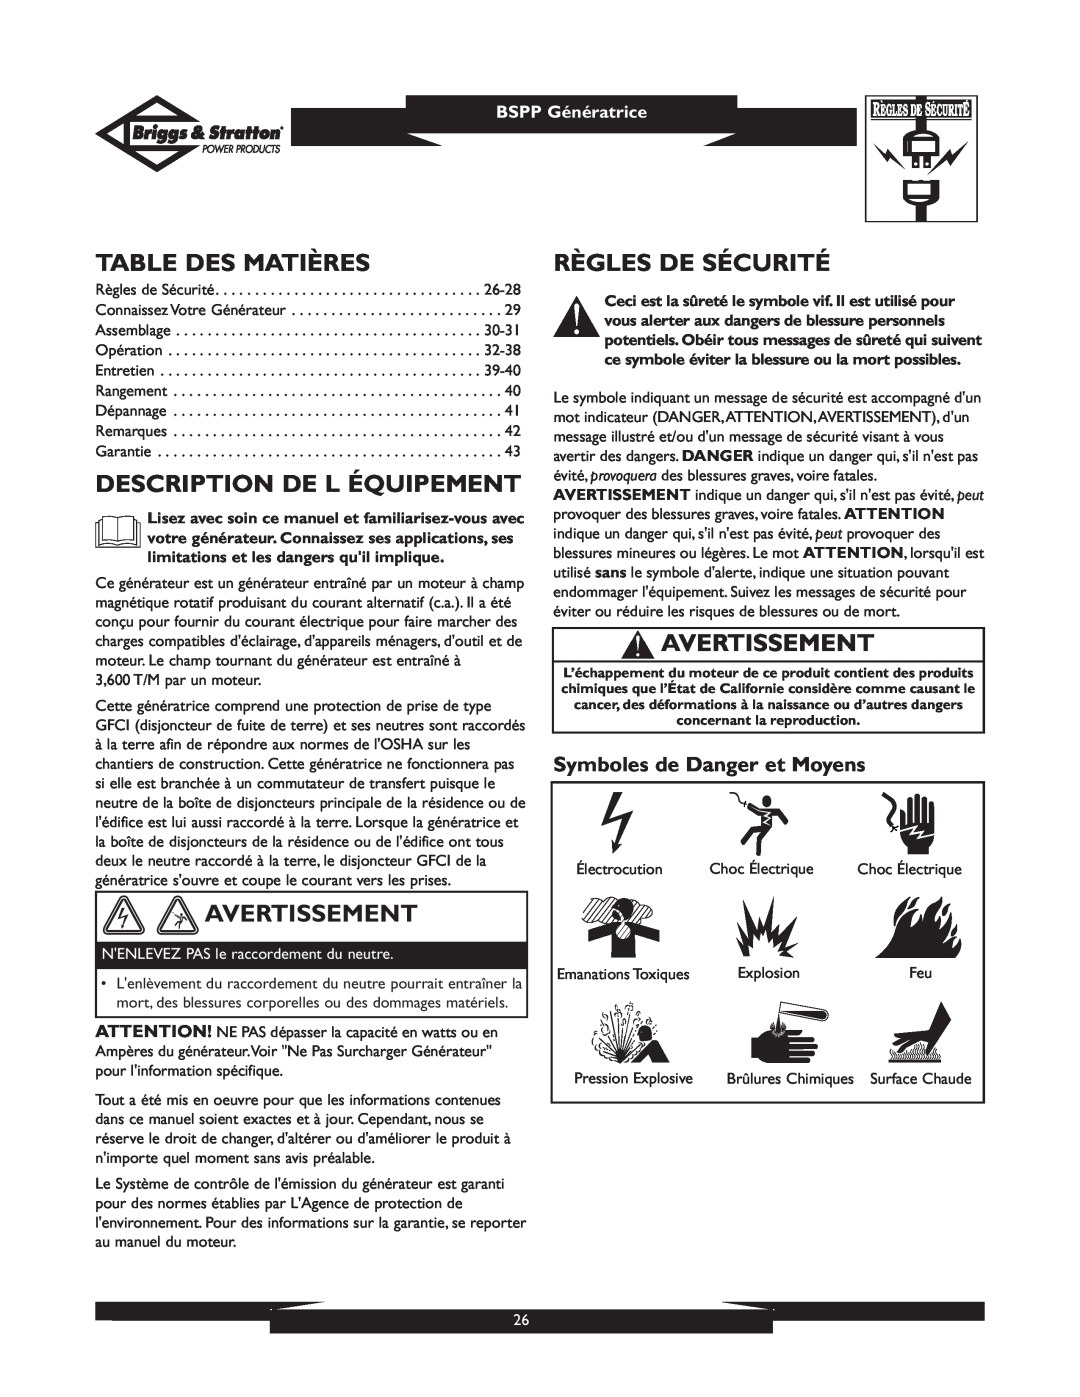 Briggs & Stratton PRO8000 owner manual Table Des Matières, Description De L Équipement, Avertissement, Règles De Sécurité 